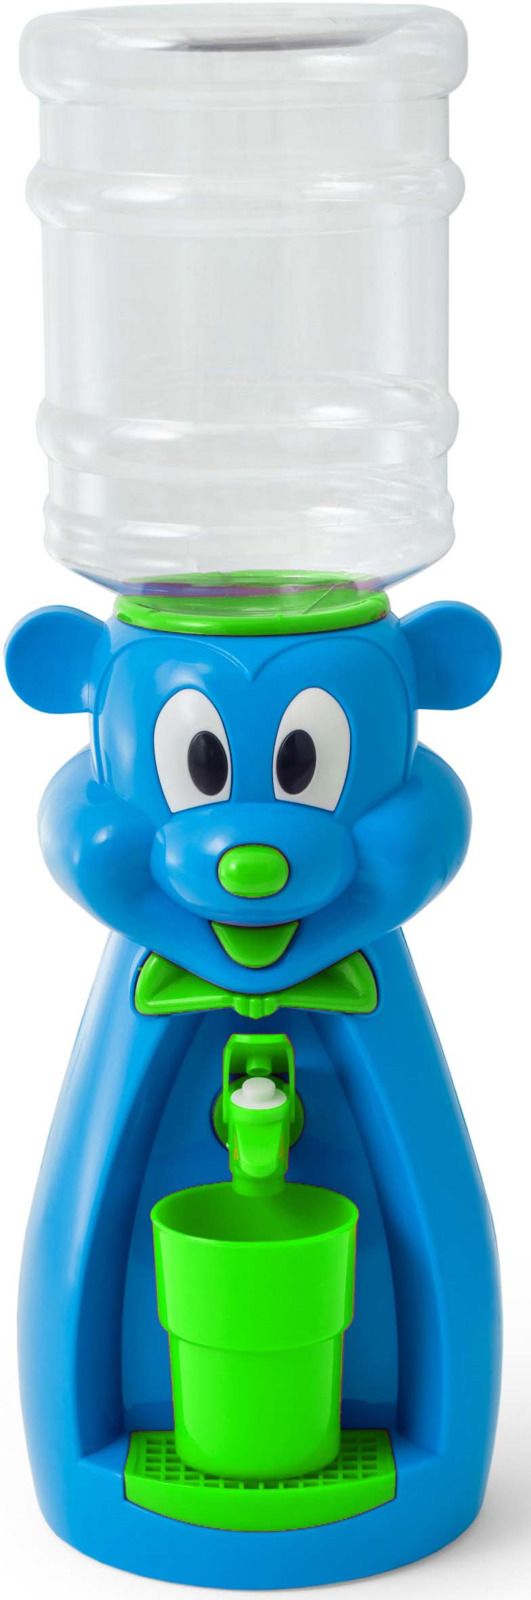    Vatten Kids Mouse, Blue